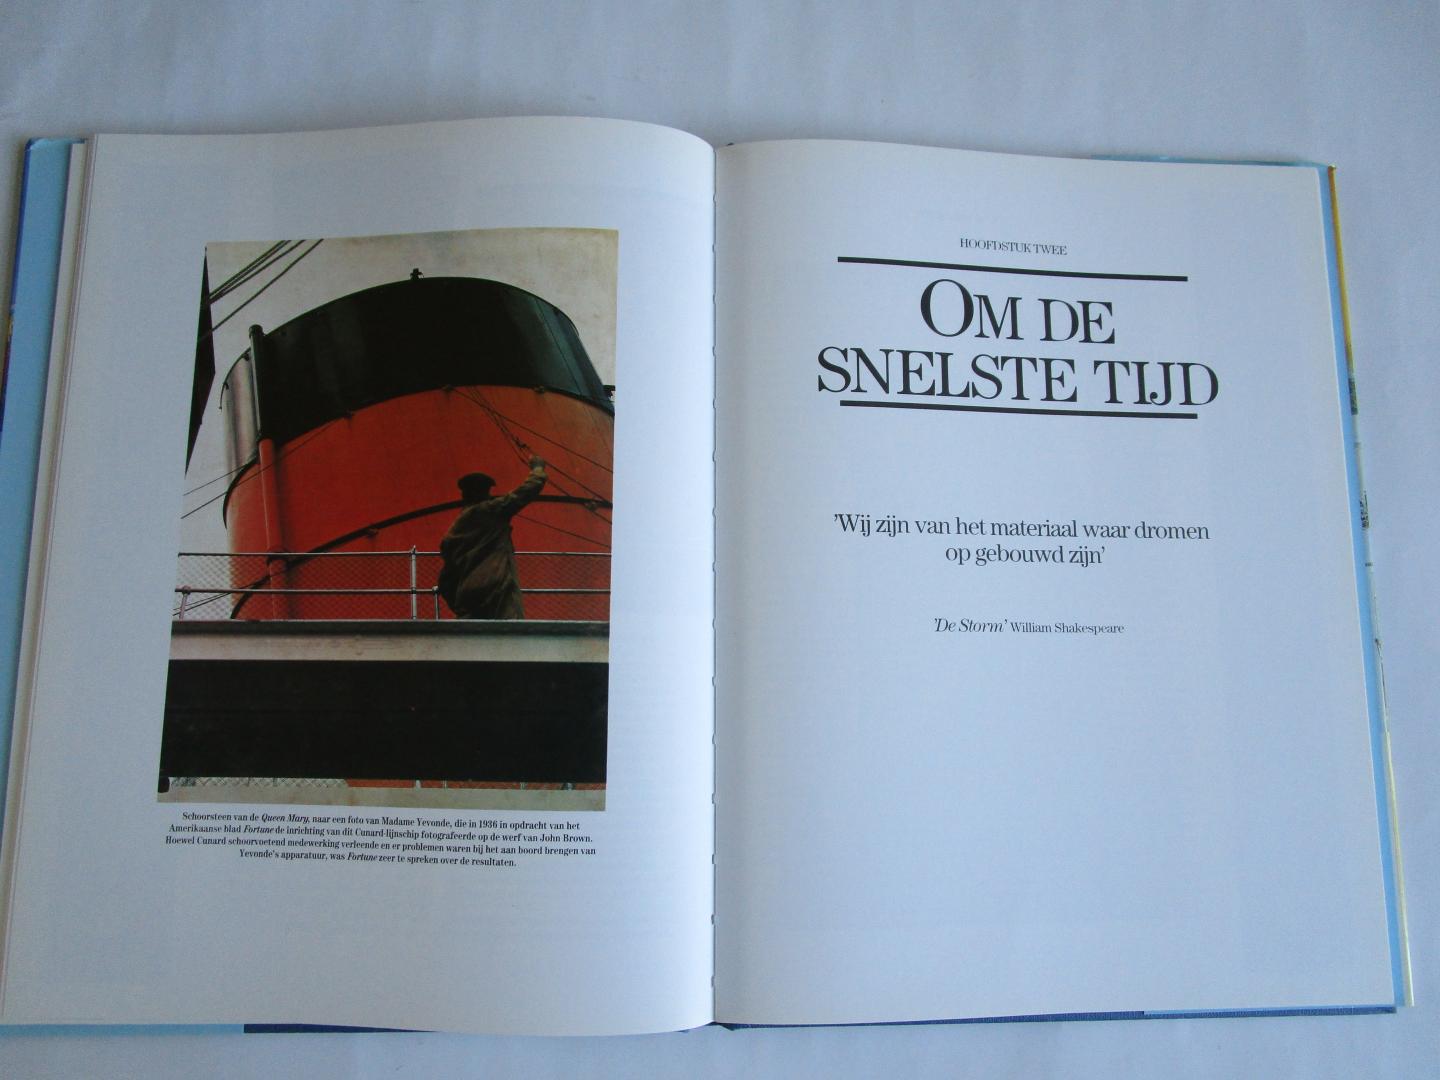 Prior, Rupert - Oceaanschepen  - De gouden jaren -